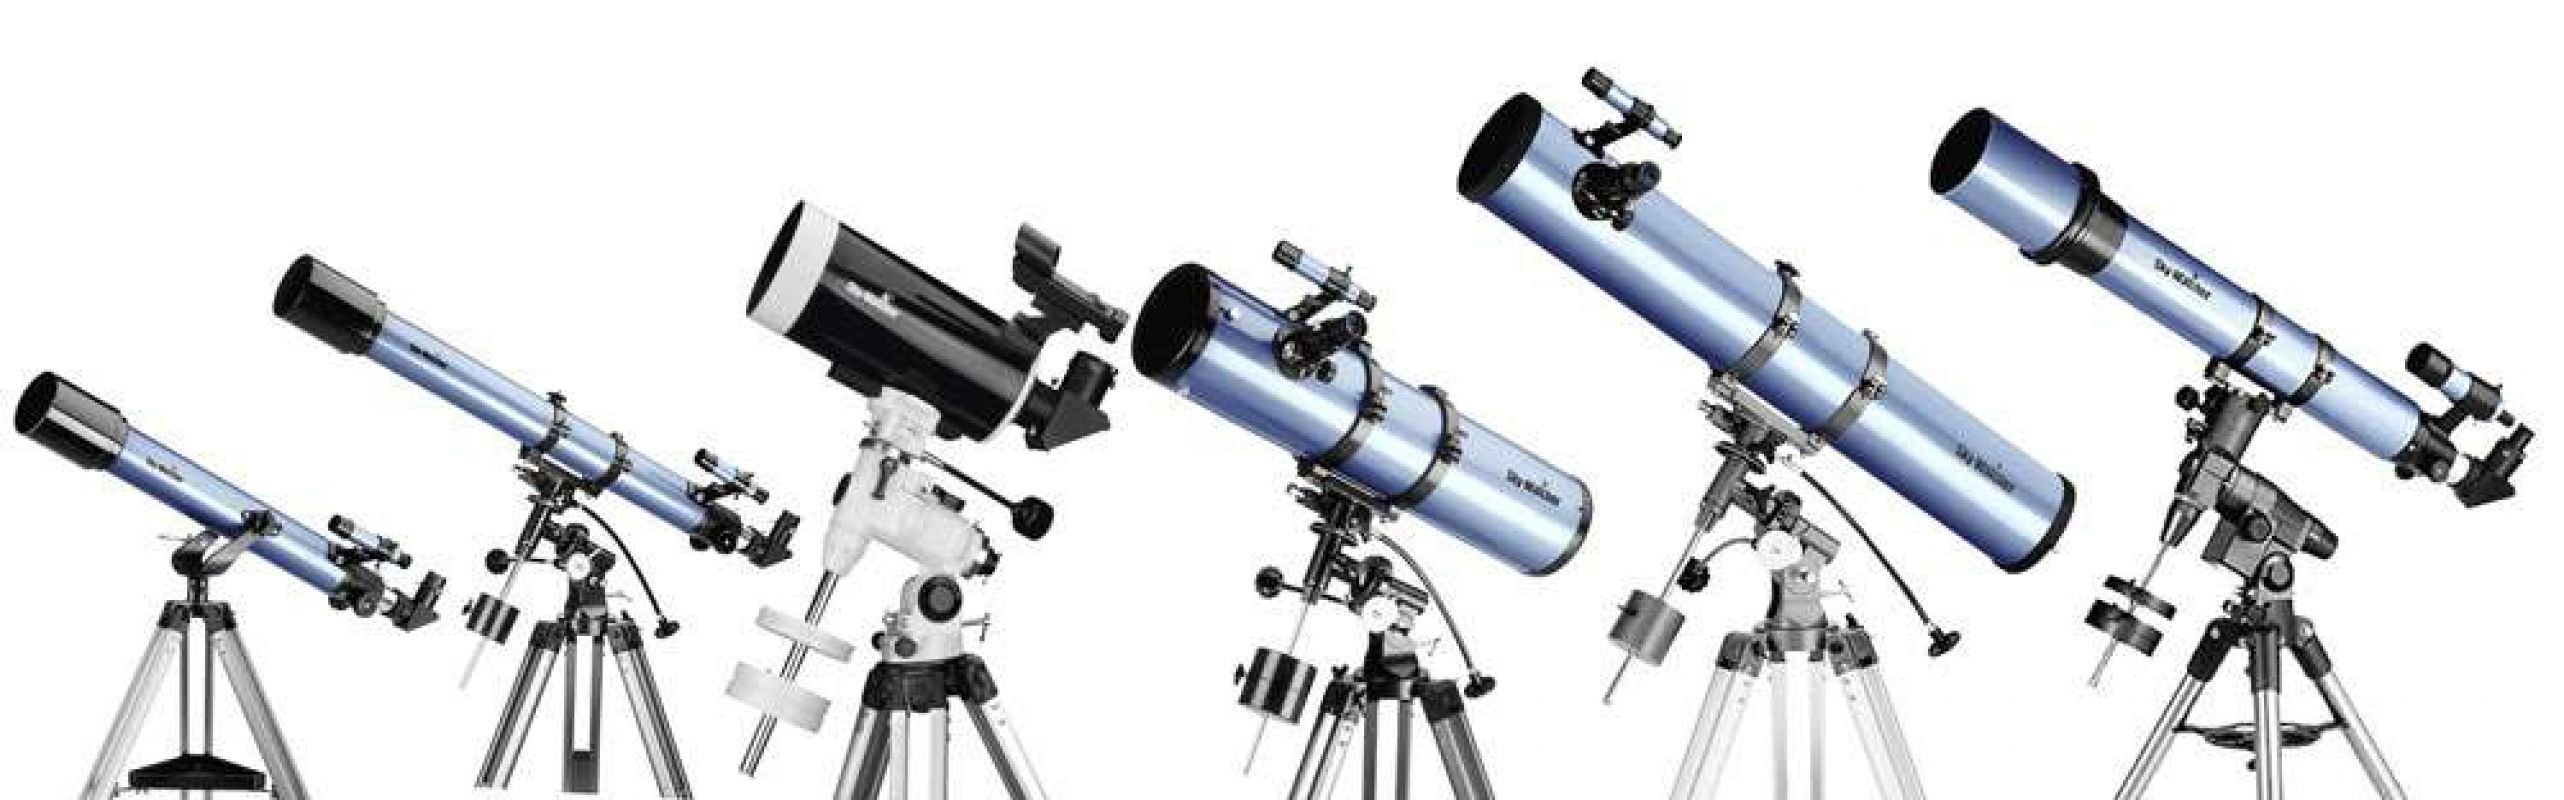 Как правильно выбрать телескоп?